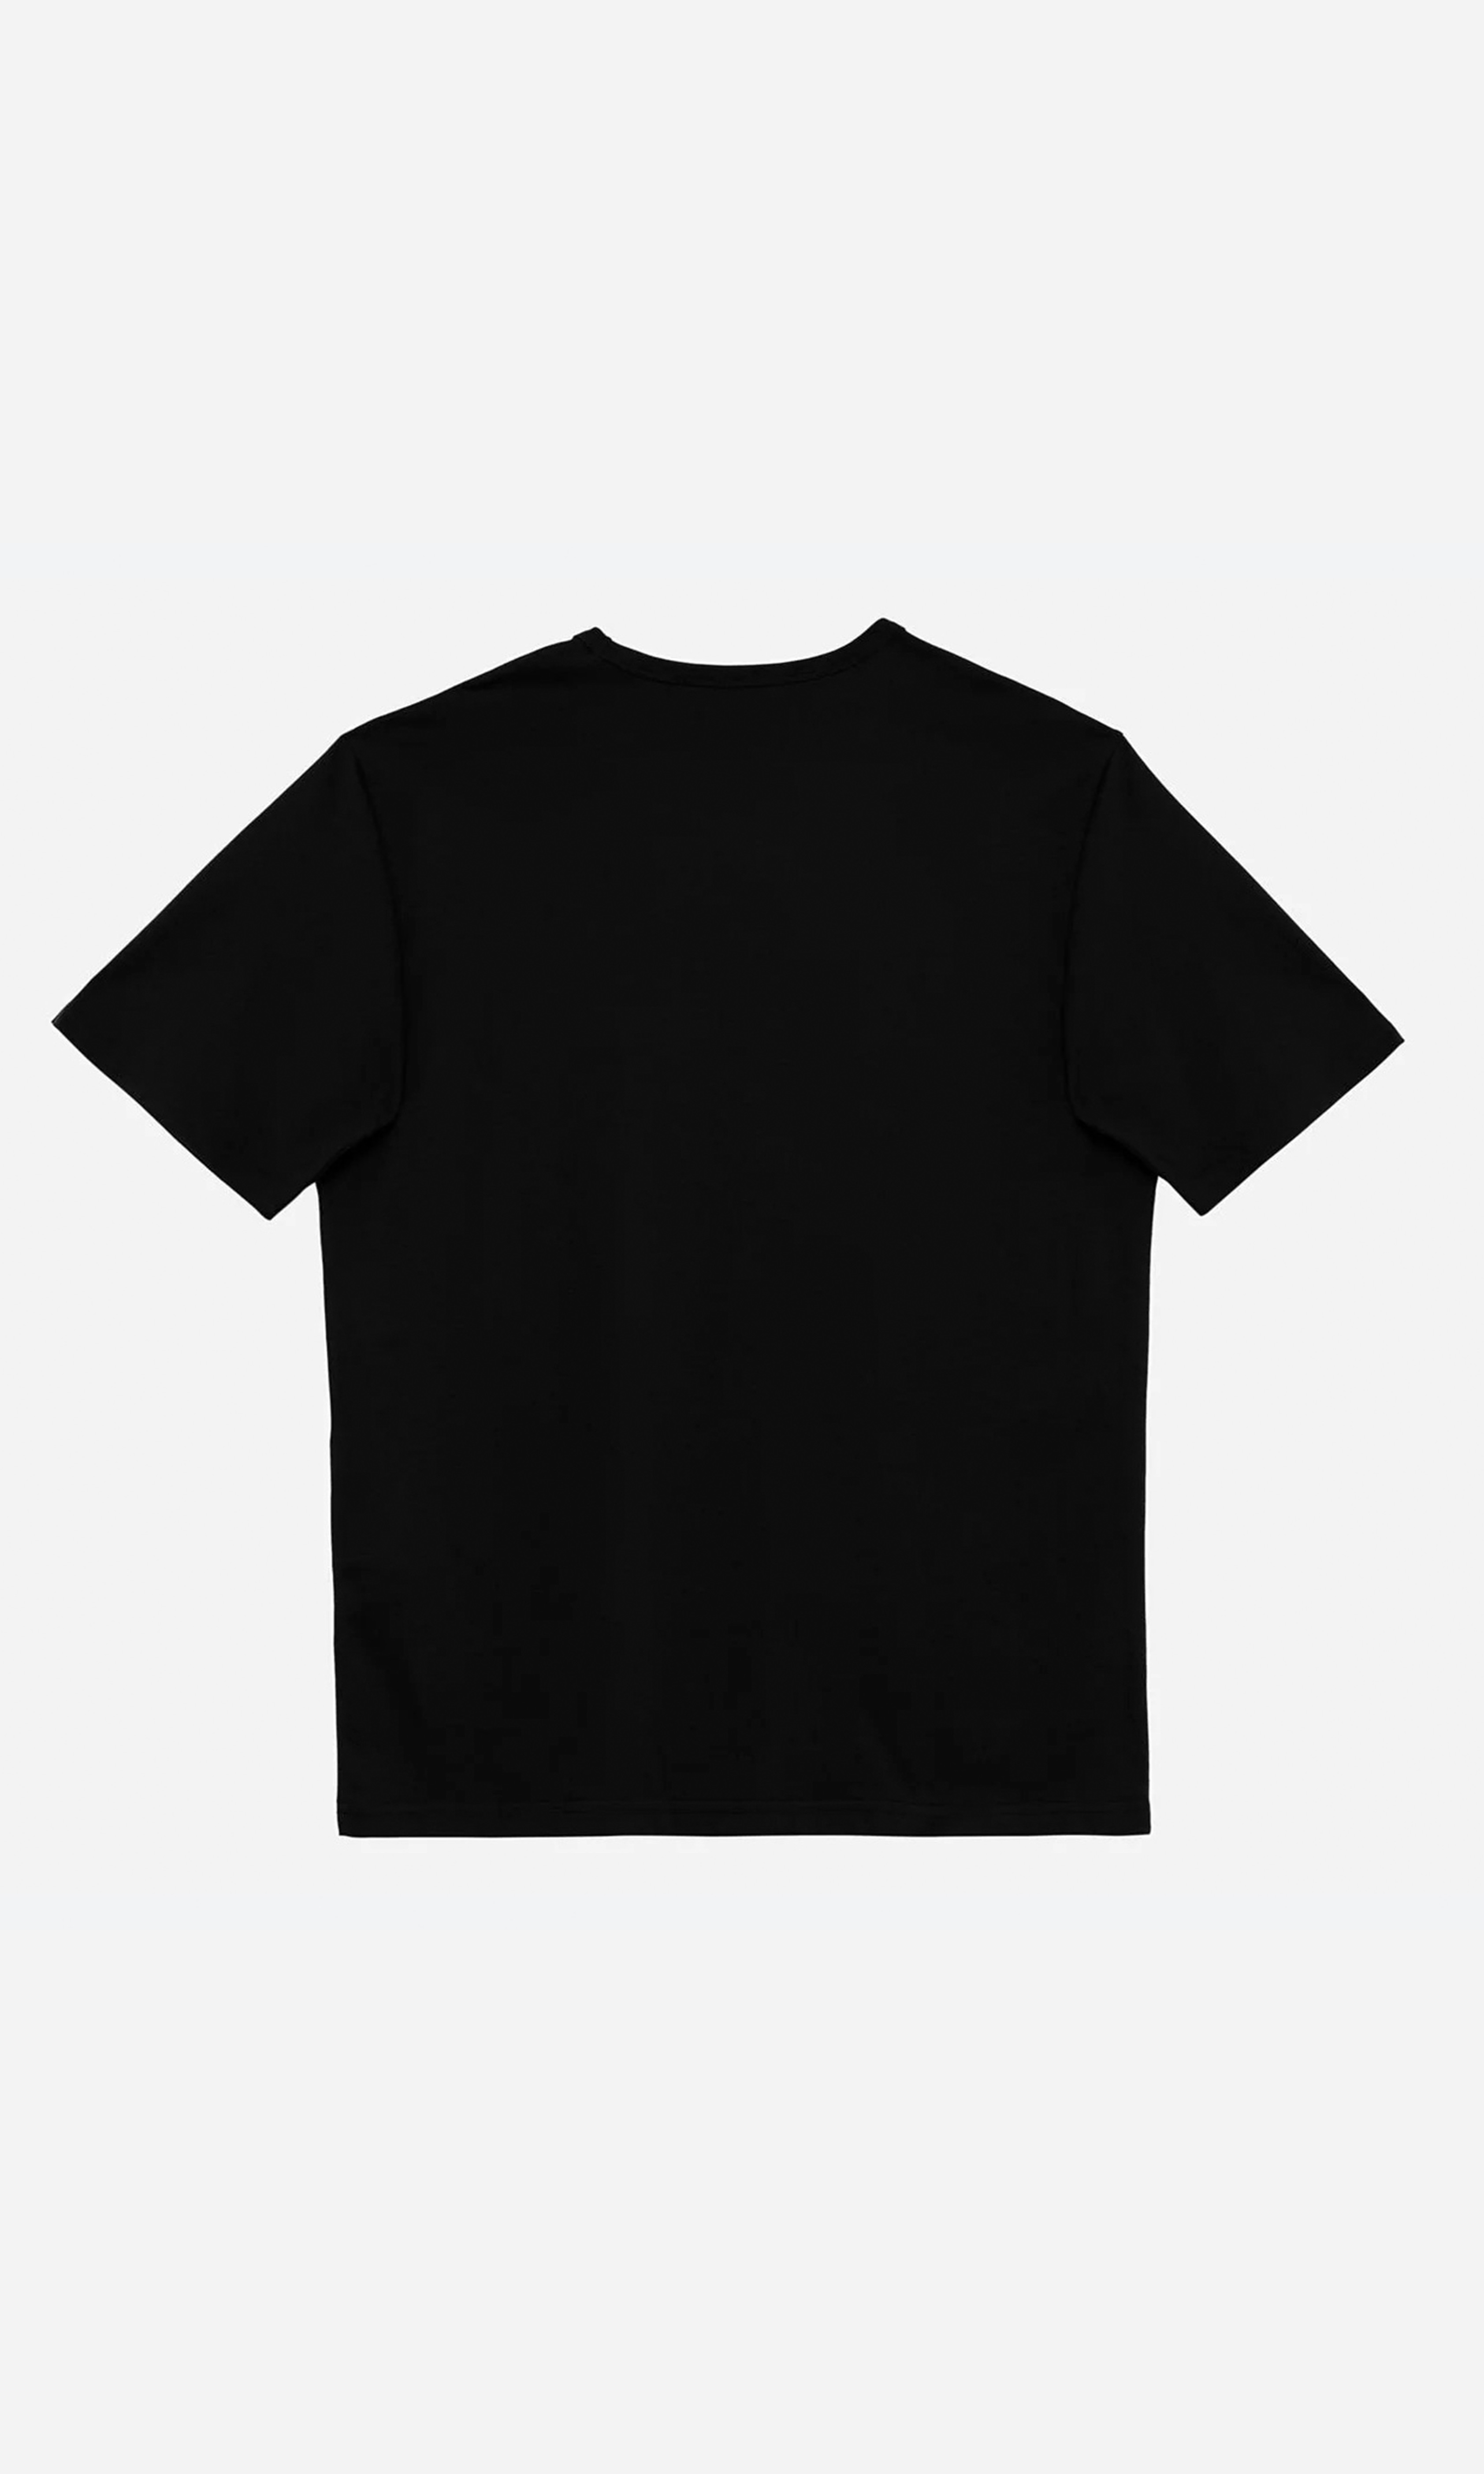 Design Studio Oversize Baskılı Unisex T-Shirt - Siyah